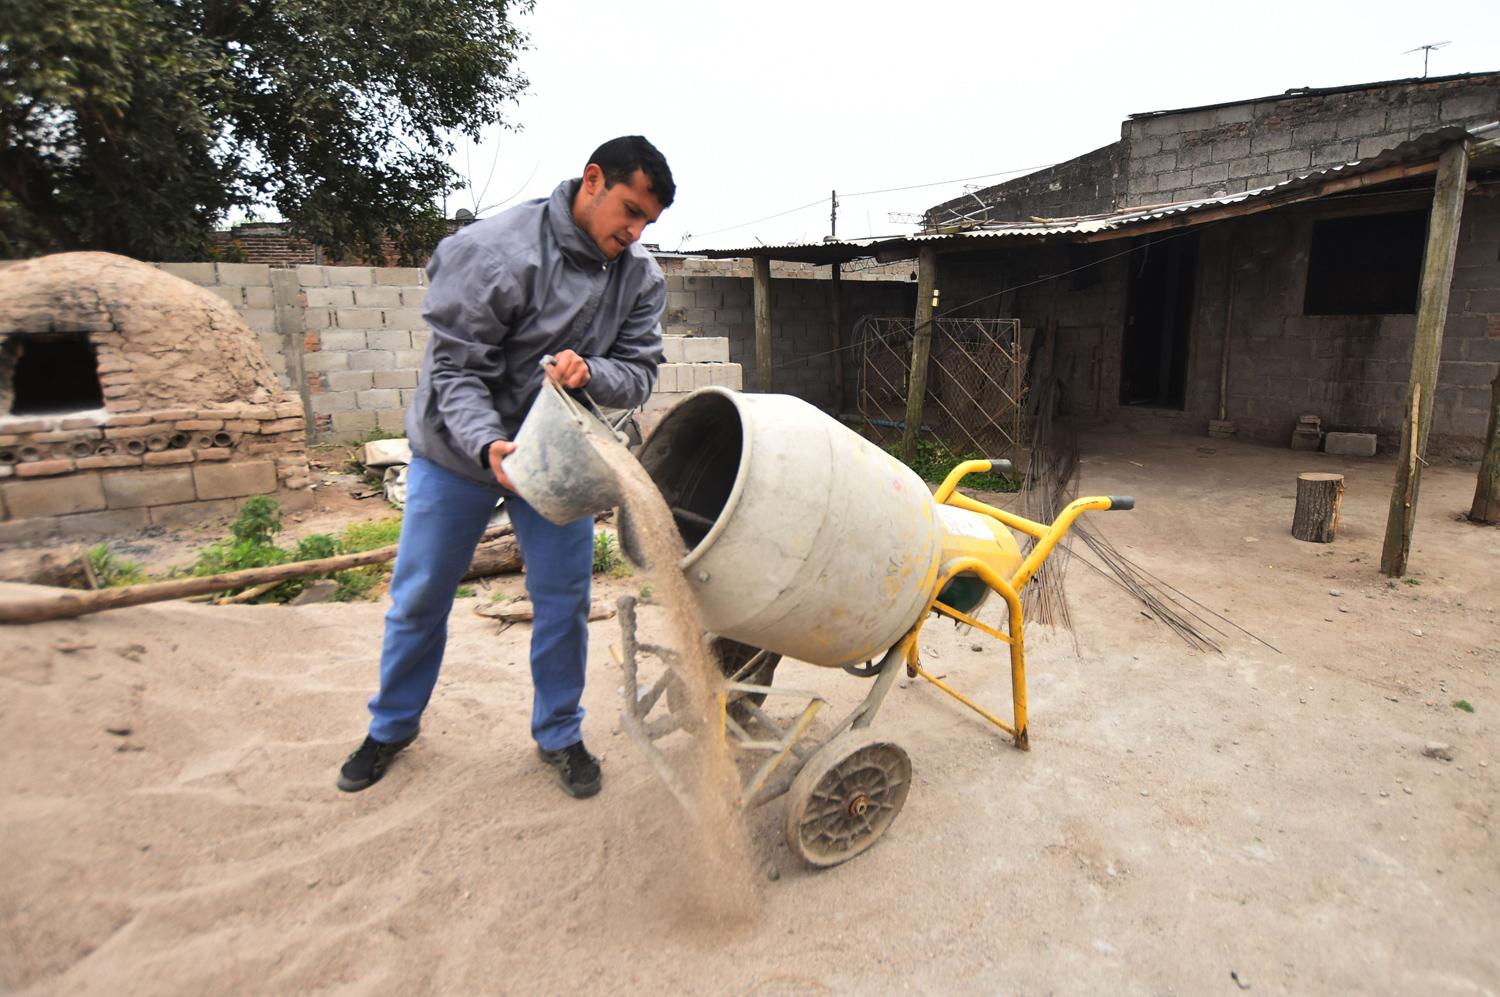 OBRERO. El delantero de Santa Ana Franco Borque cosecha limones o arándanos y, además, ayuda en la construcción.